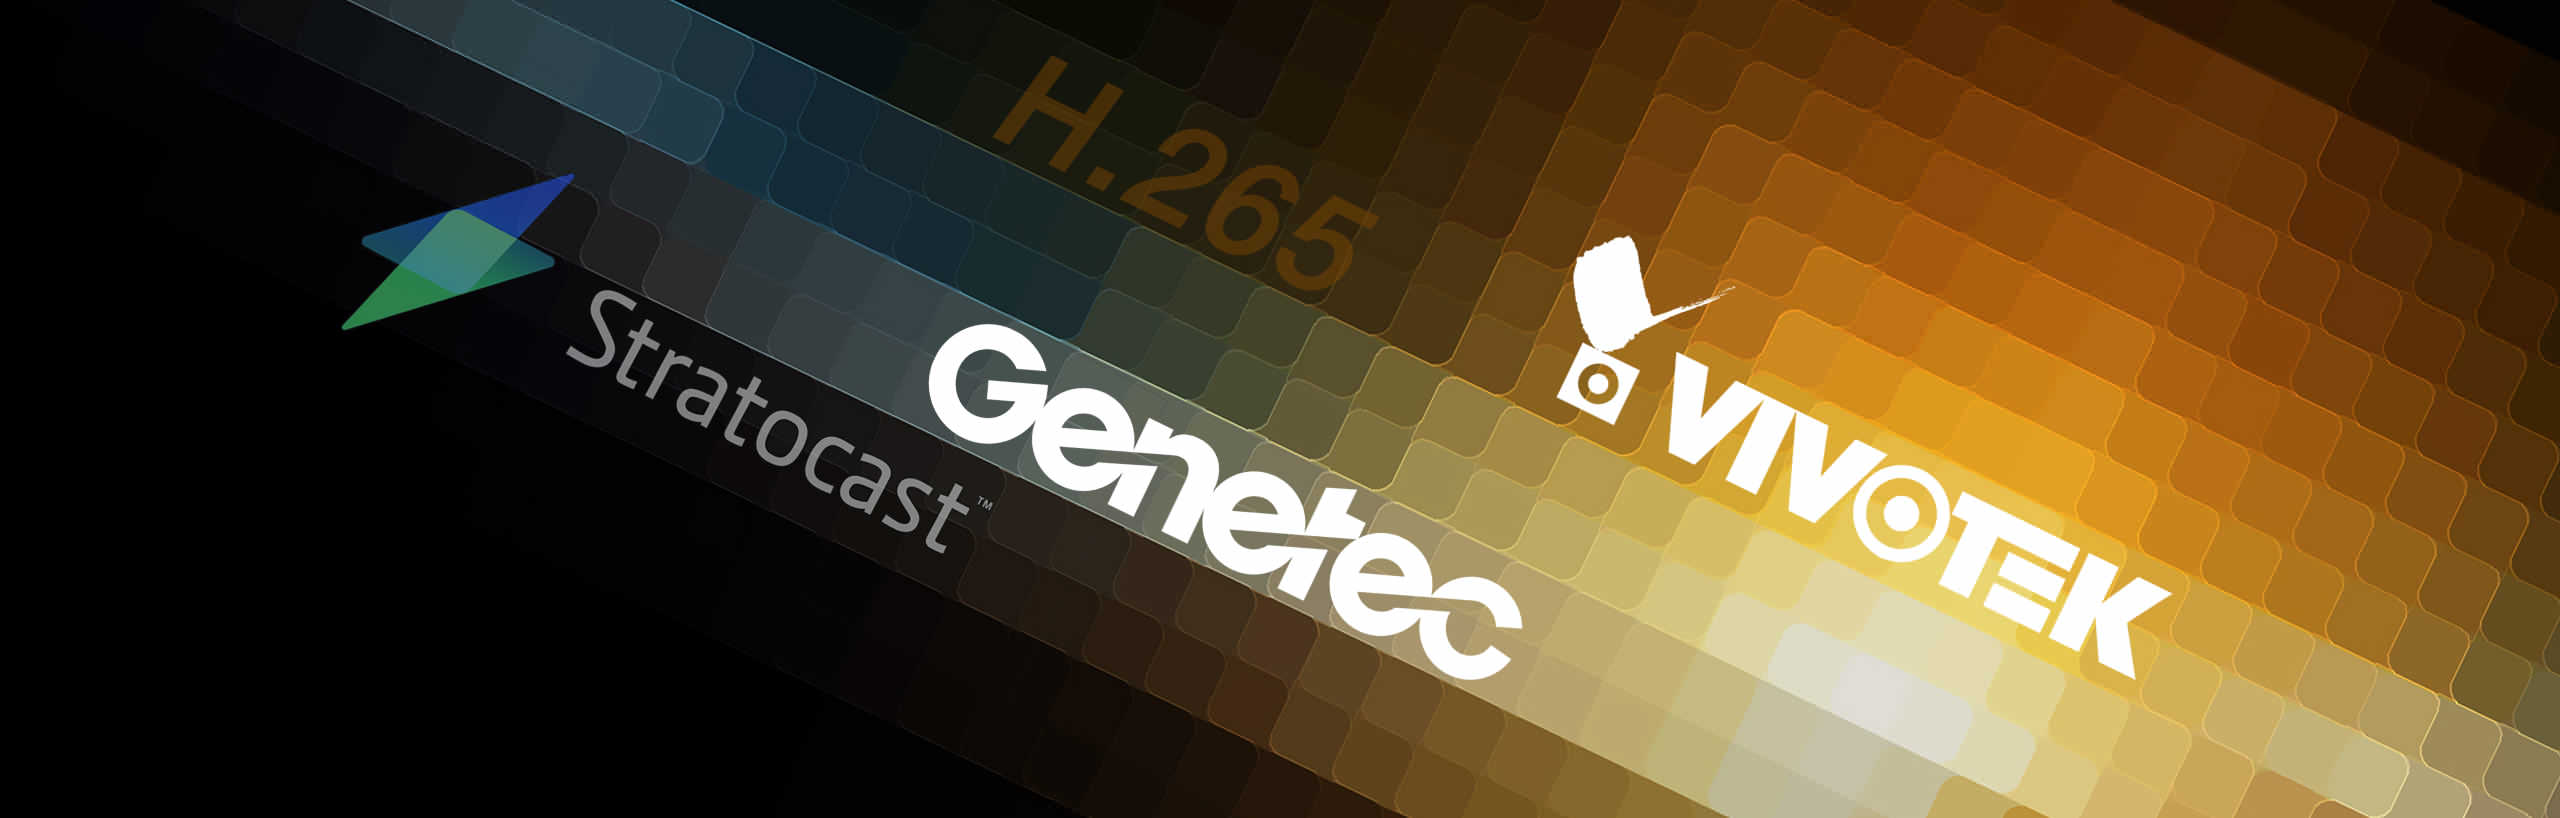 Genetec Vivotek partner for H.265